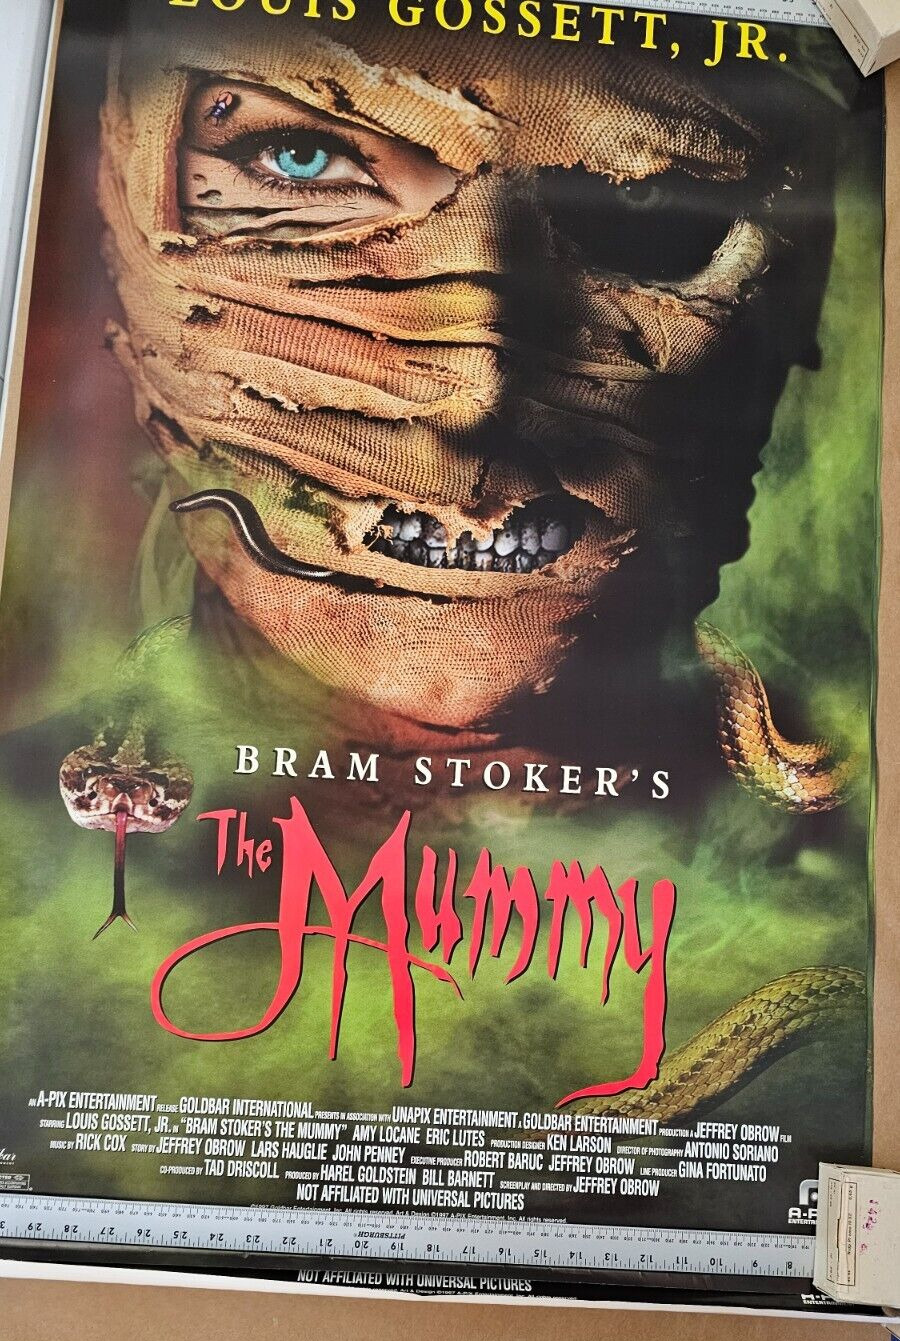 Bram Stoker's 1997 The Mummy Louis Gossett  Jr.  DVD promotional Movie poster